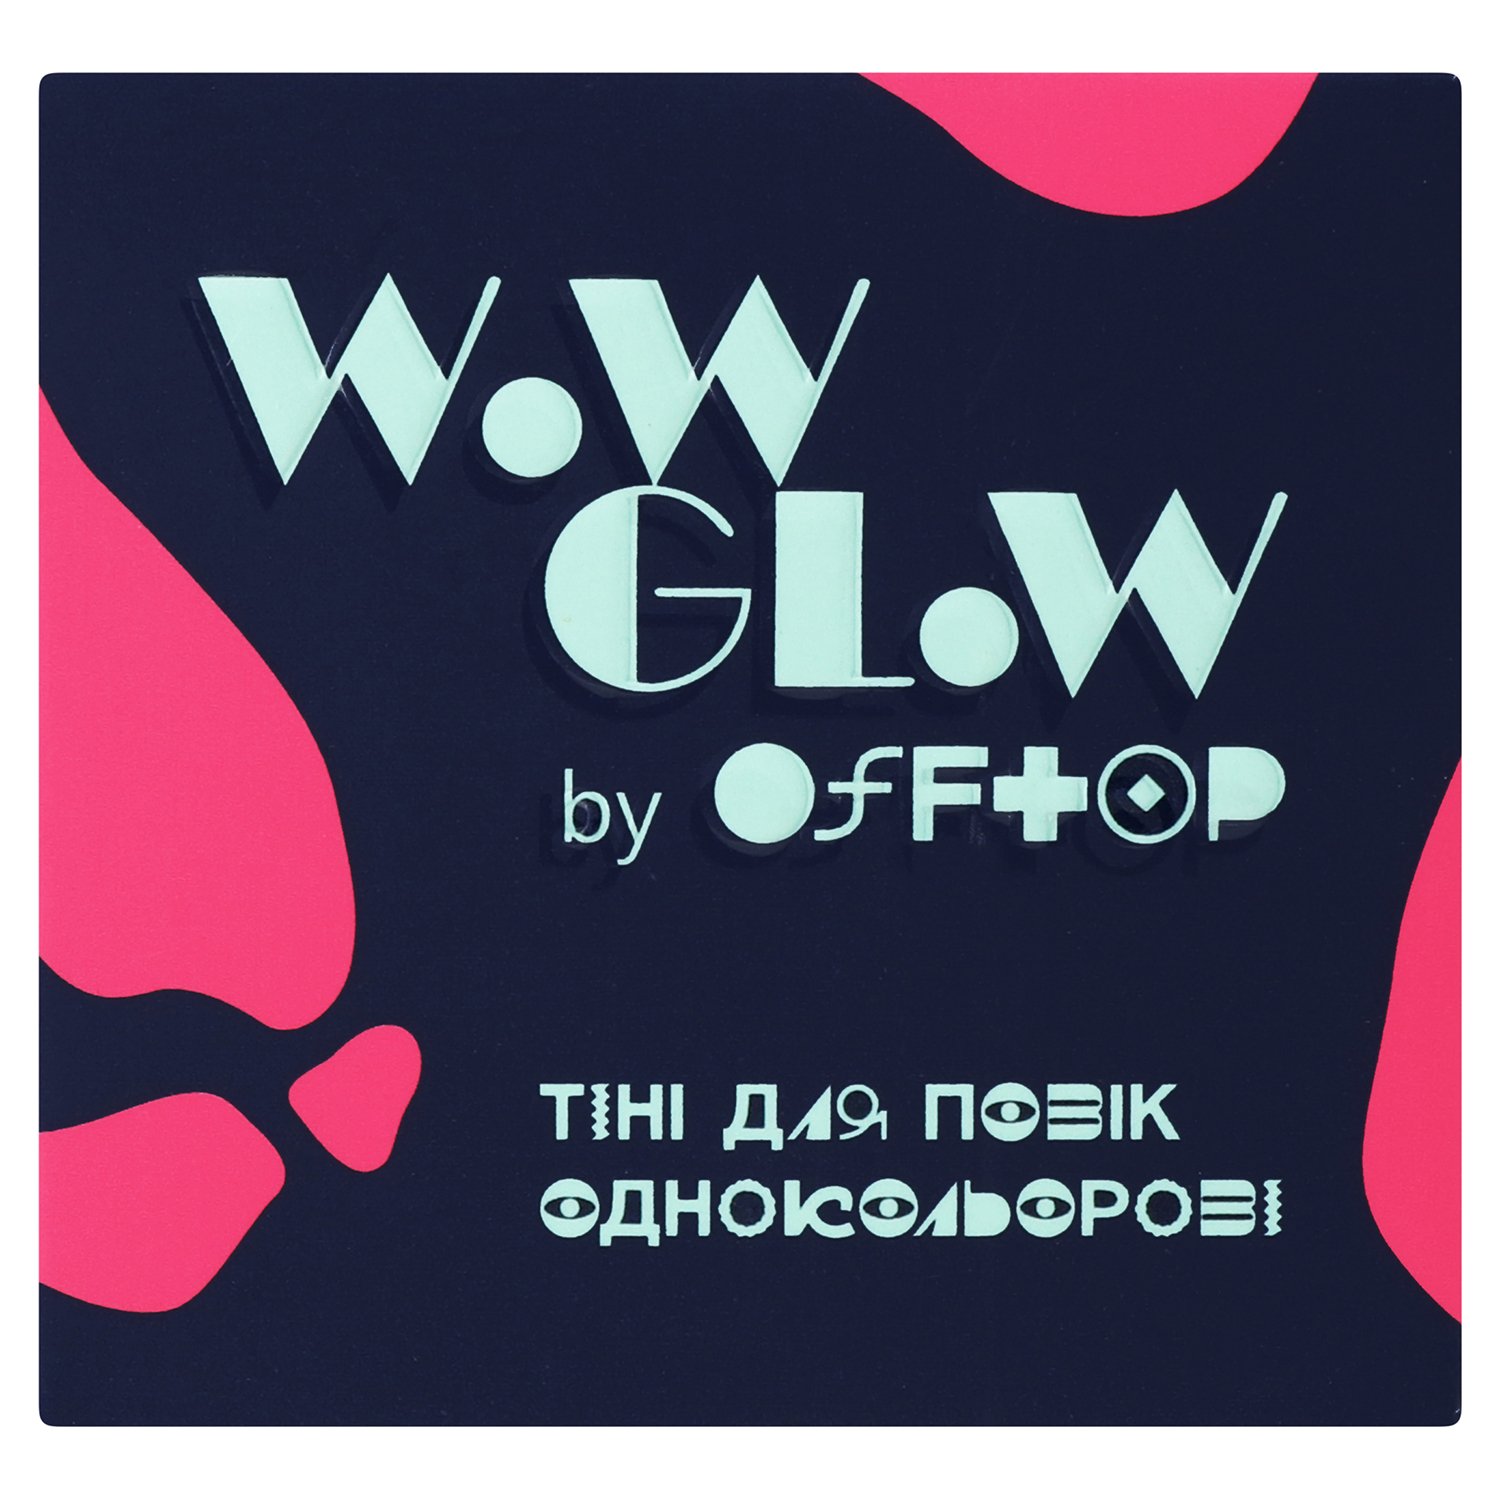 Тени для век Offtop Wow Glow, тон 01 (889588) - фото 2